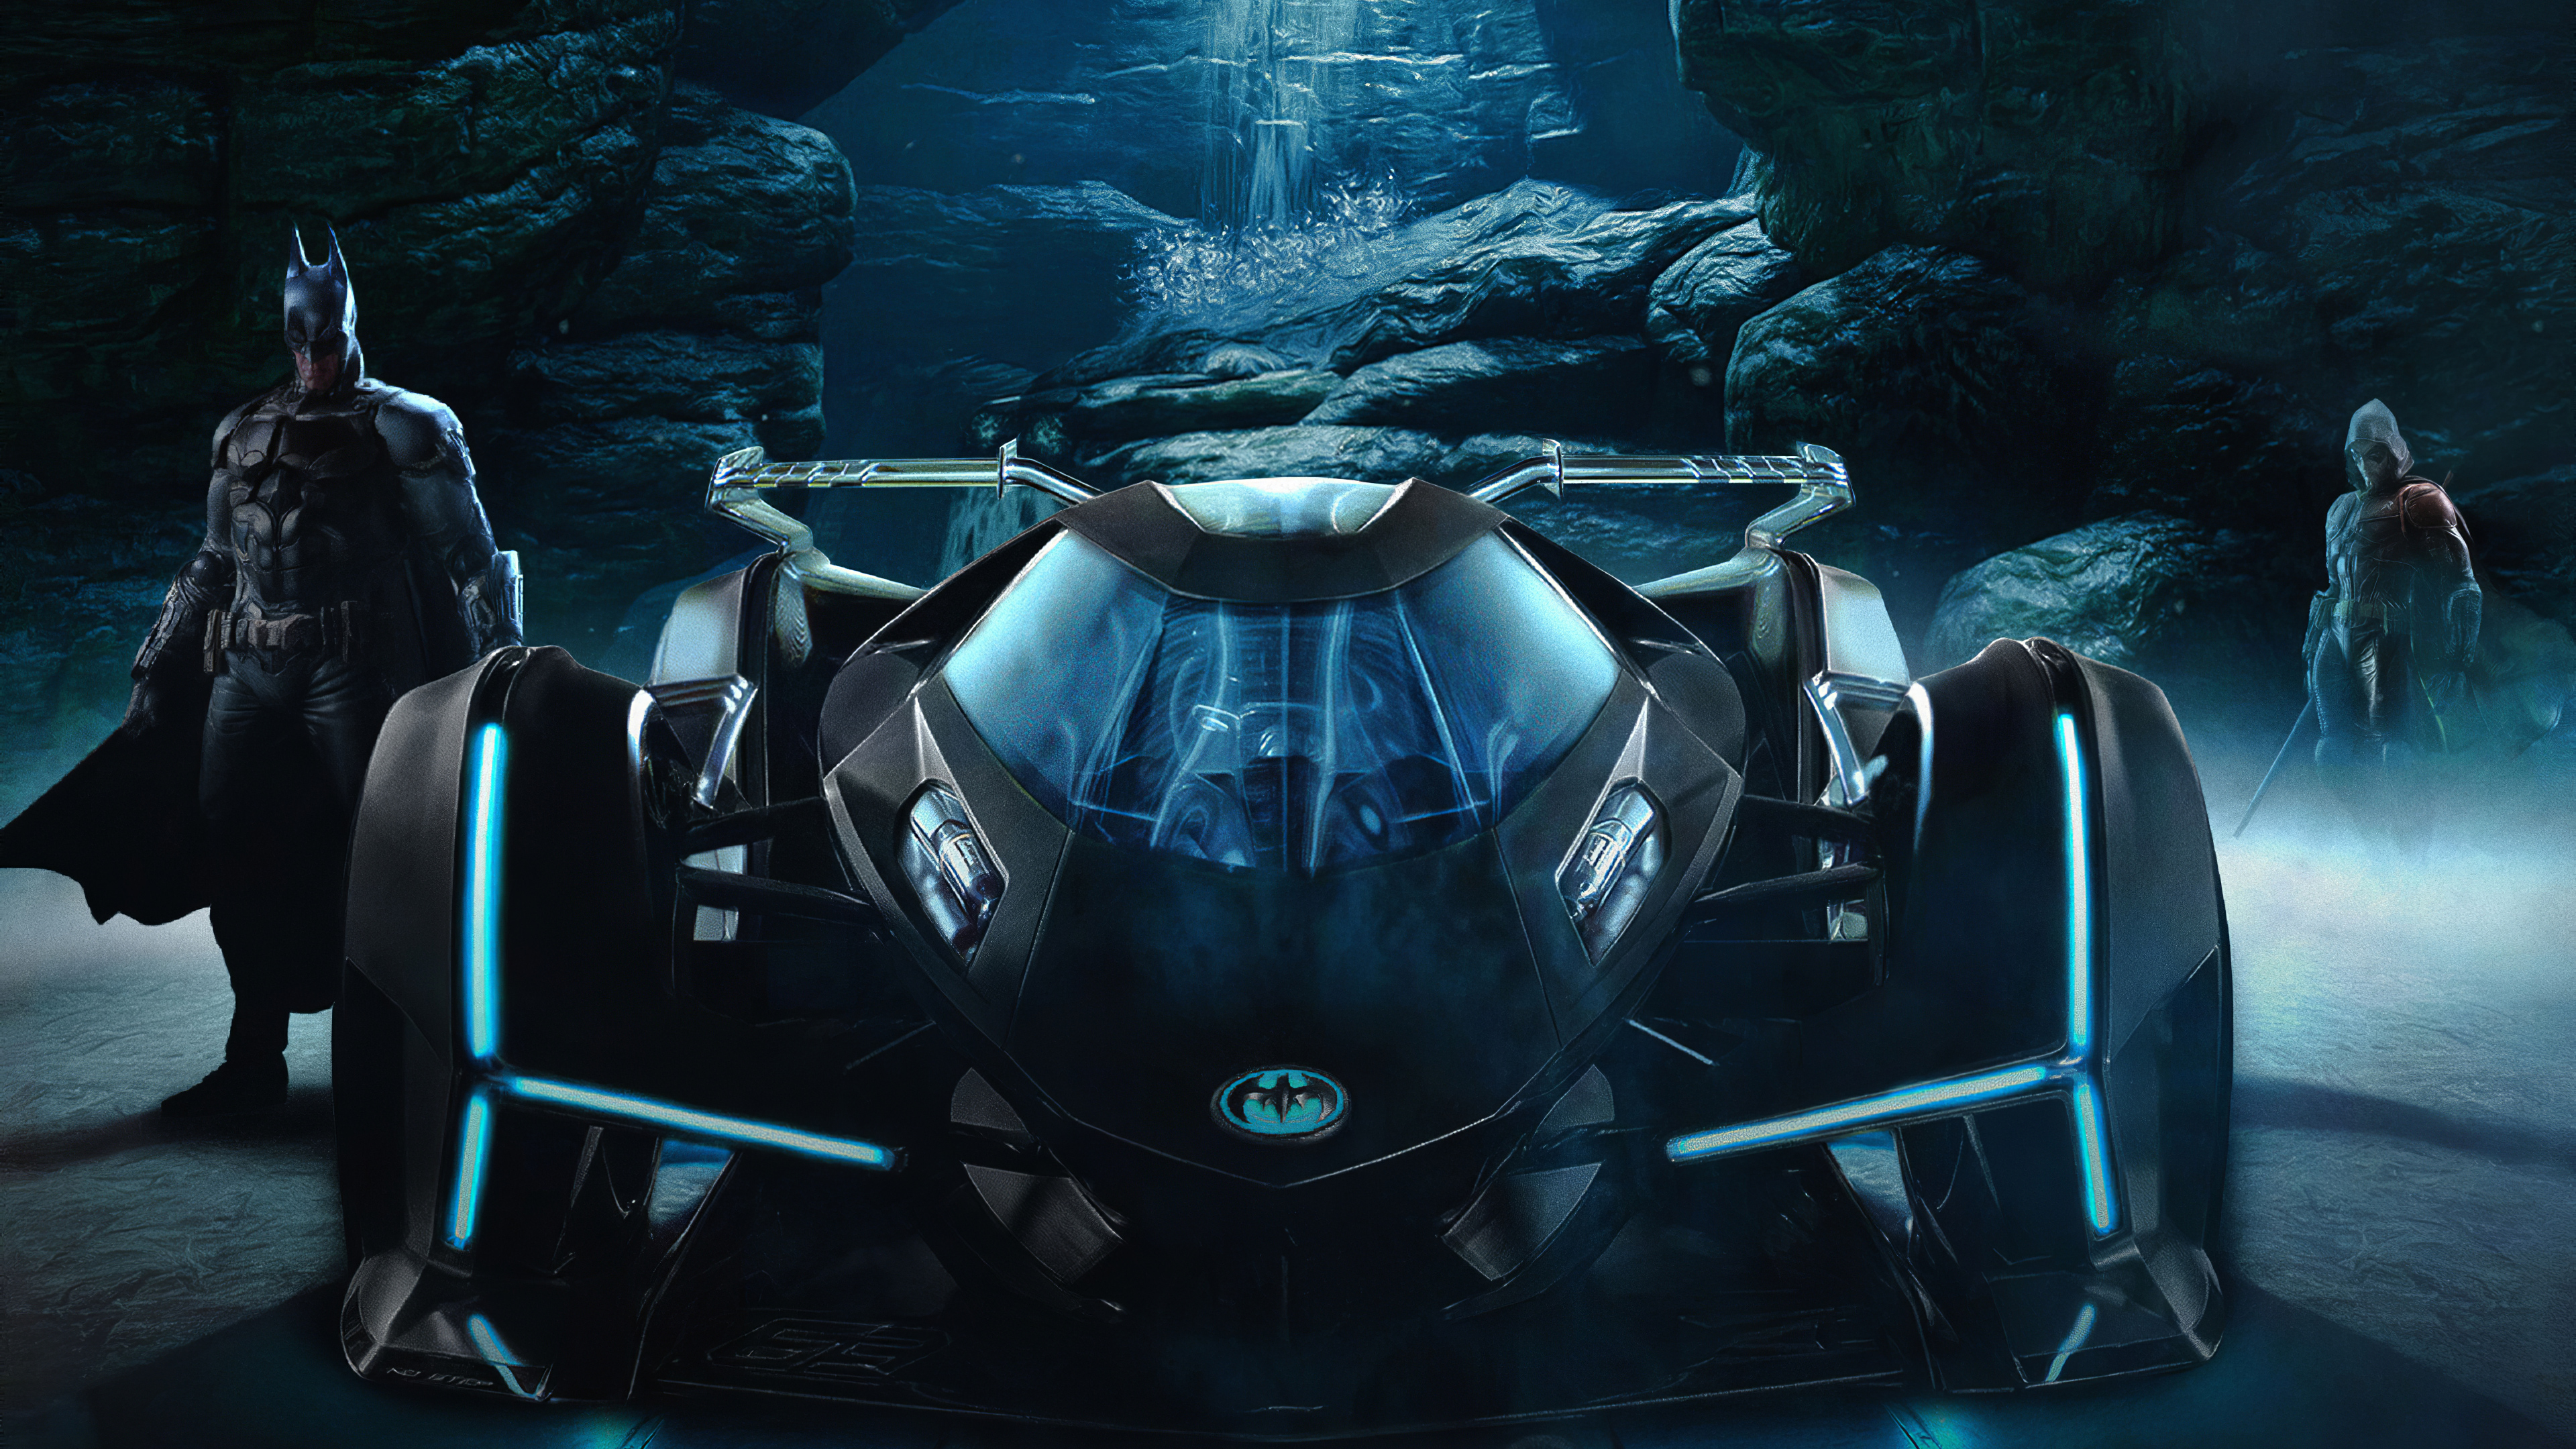 Lamborghini Vision Gran Turismo As BatMobile, HD Superheroes, 4k